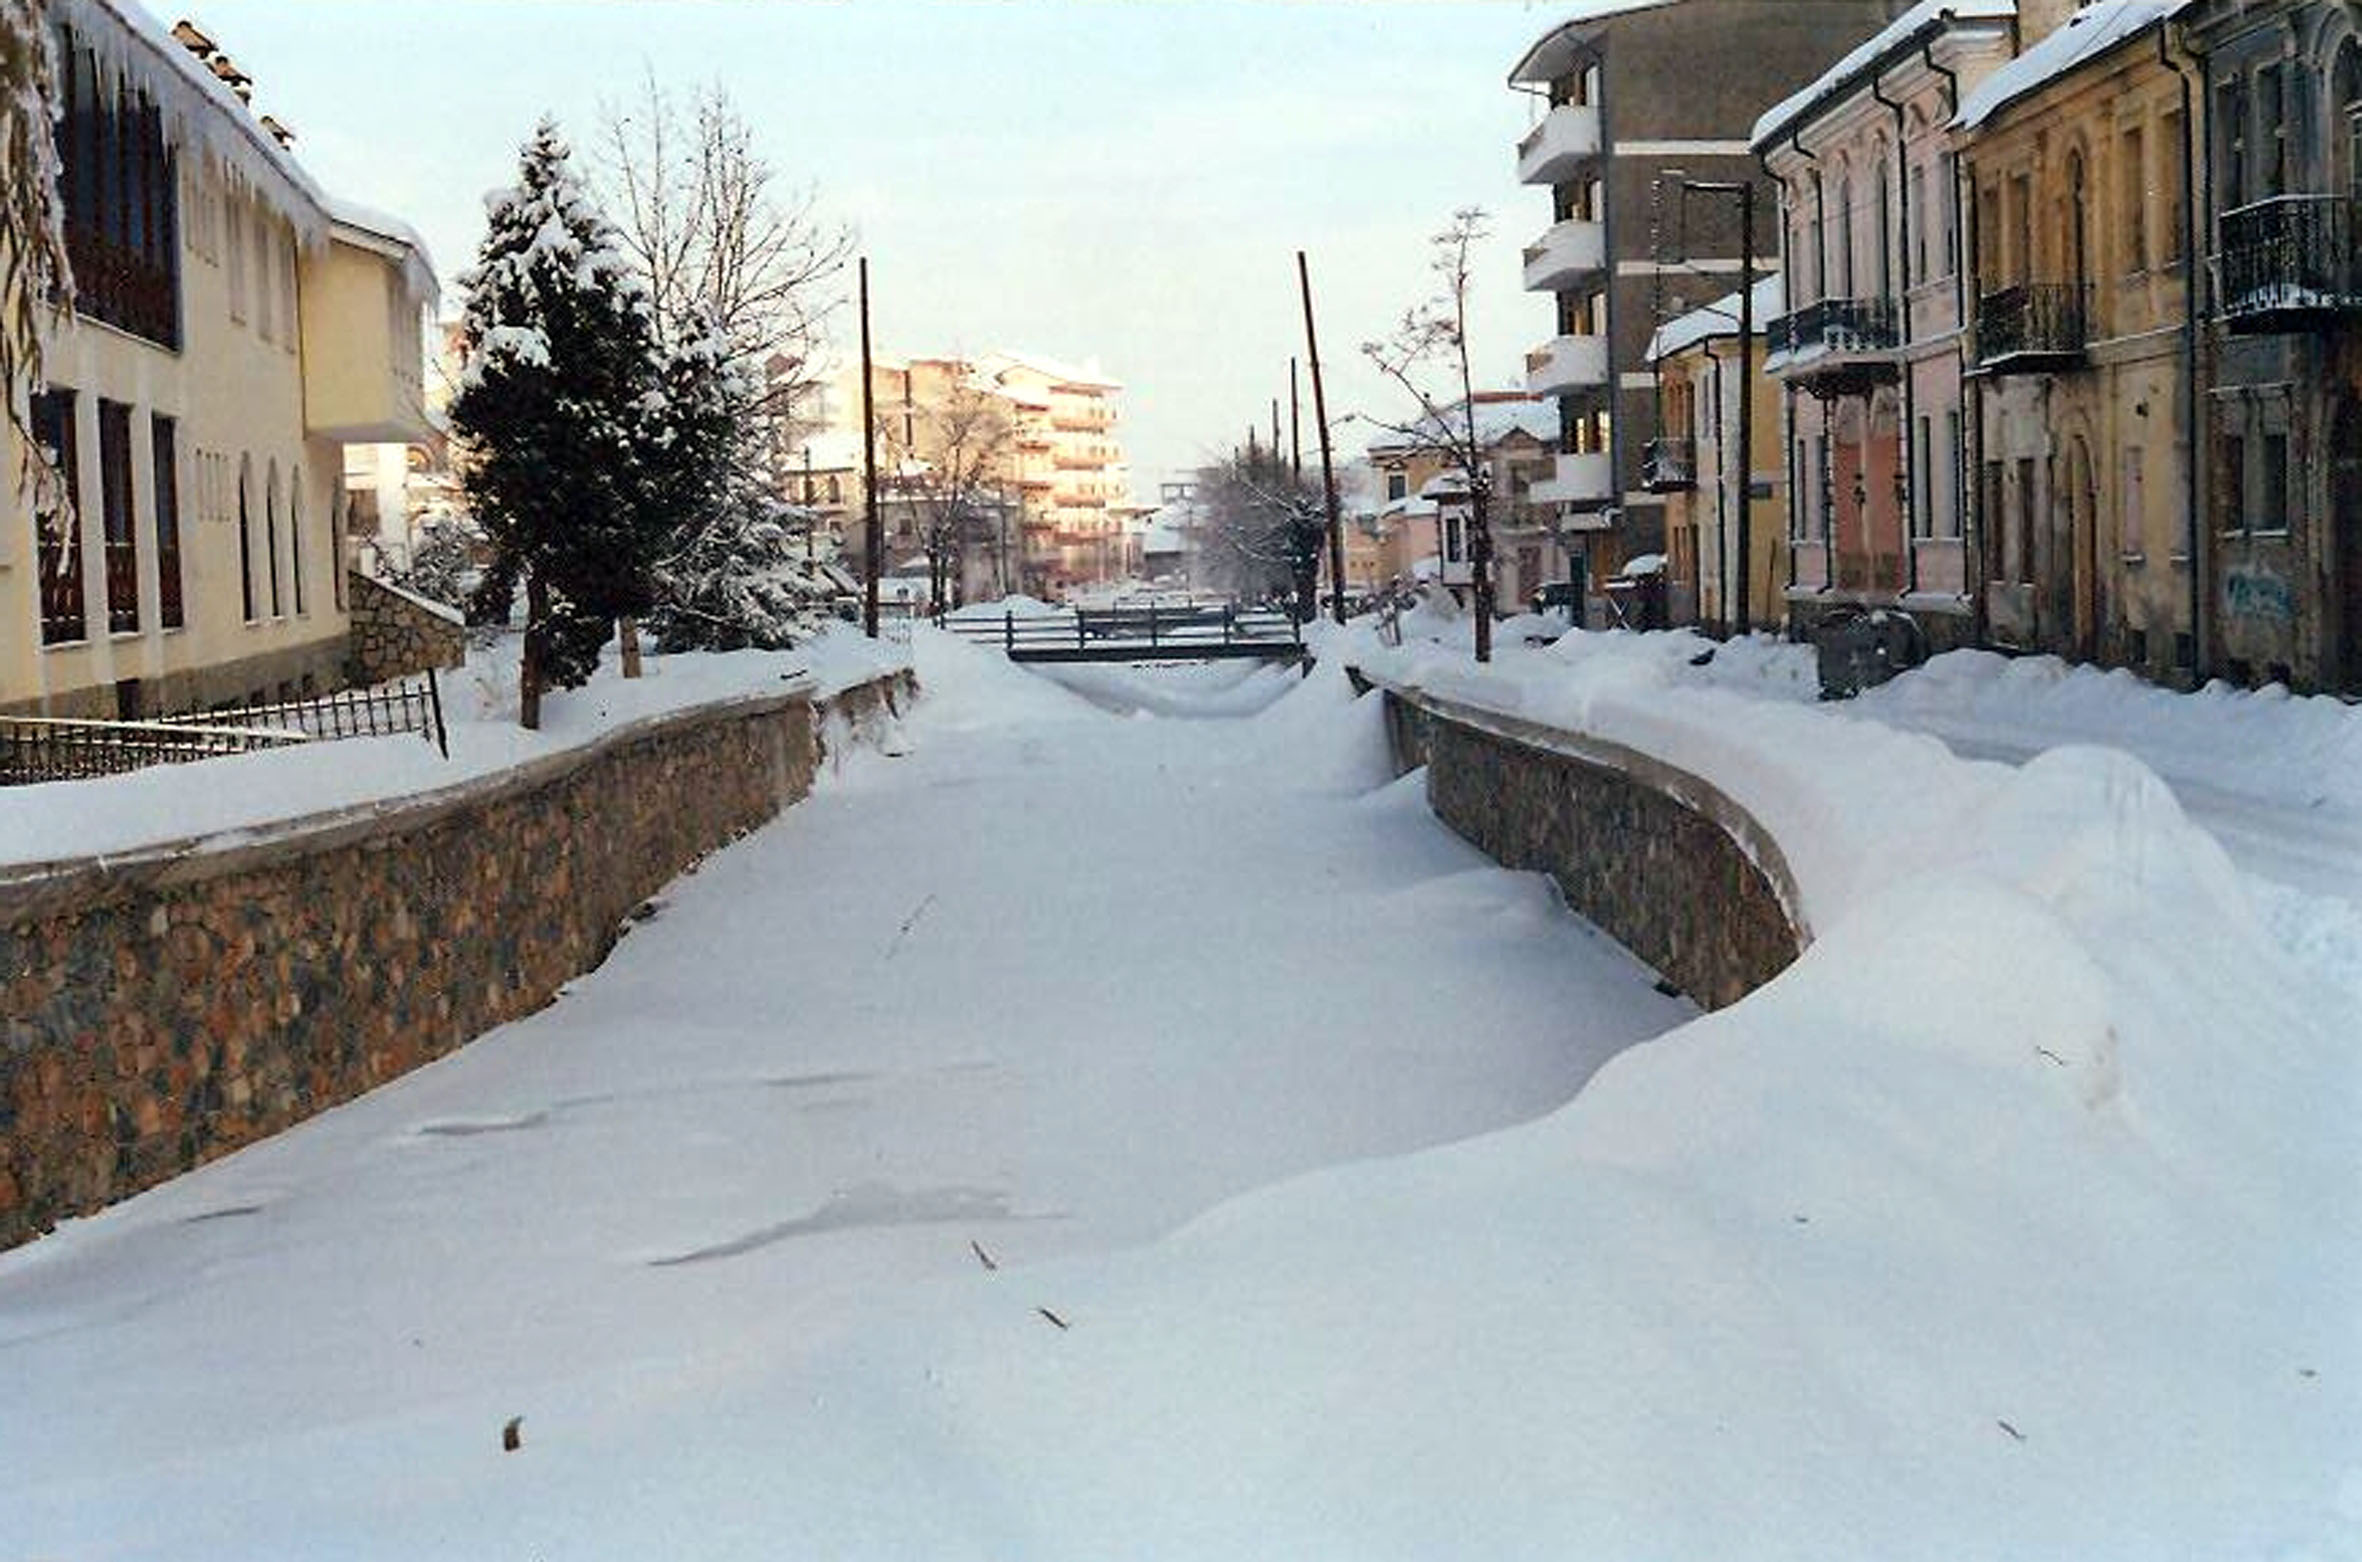 Καιρός – Φλώρινα: Χιόνια και τα πάντα λευκά μέσα στην πόλη